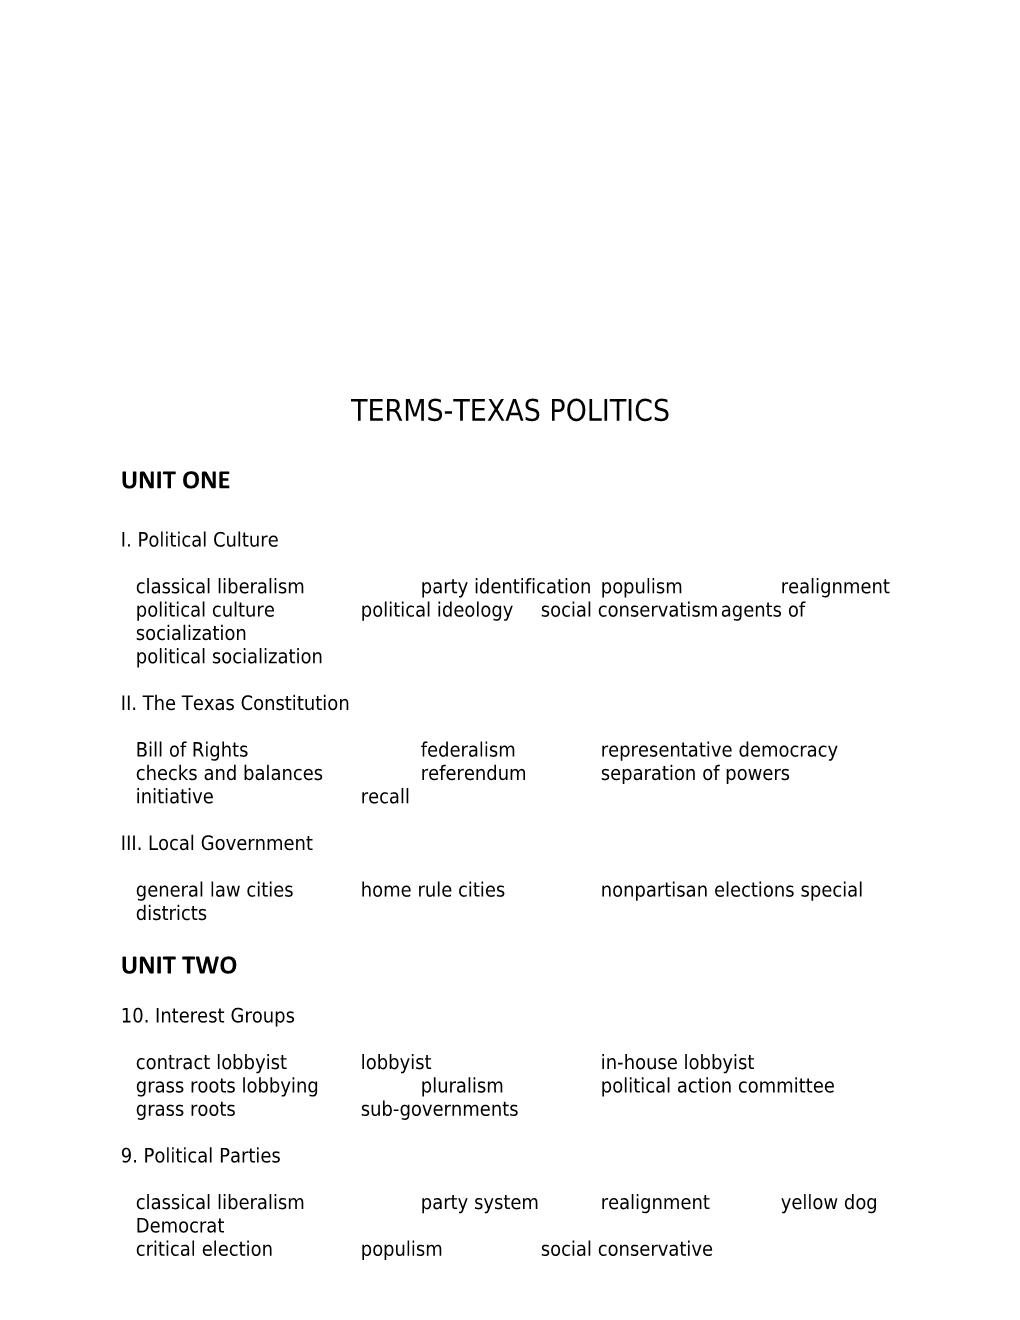 Study Questions-Texas Politics